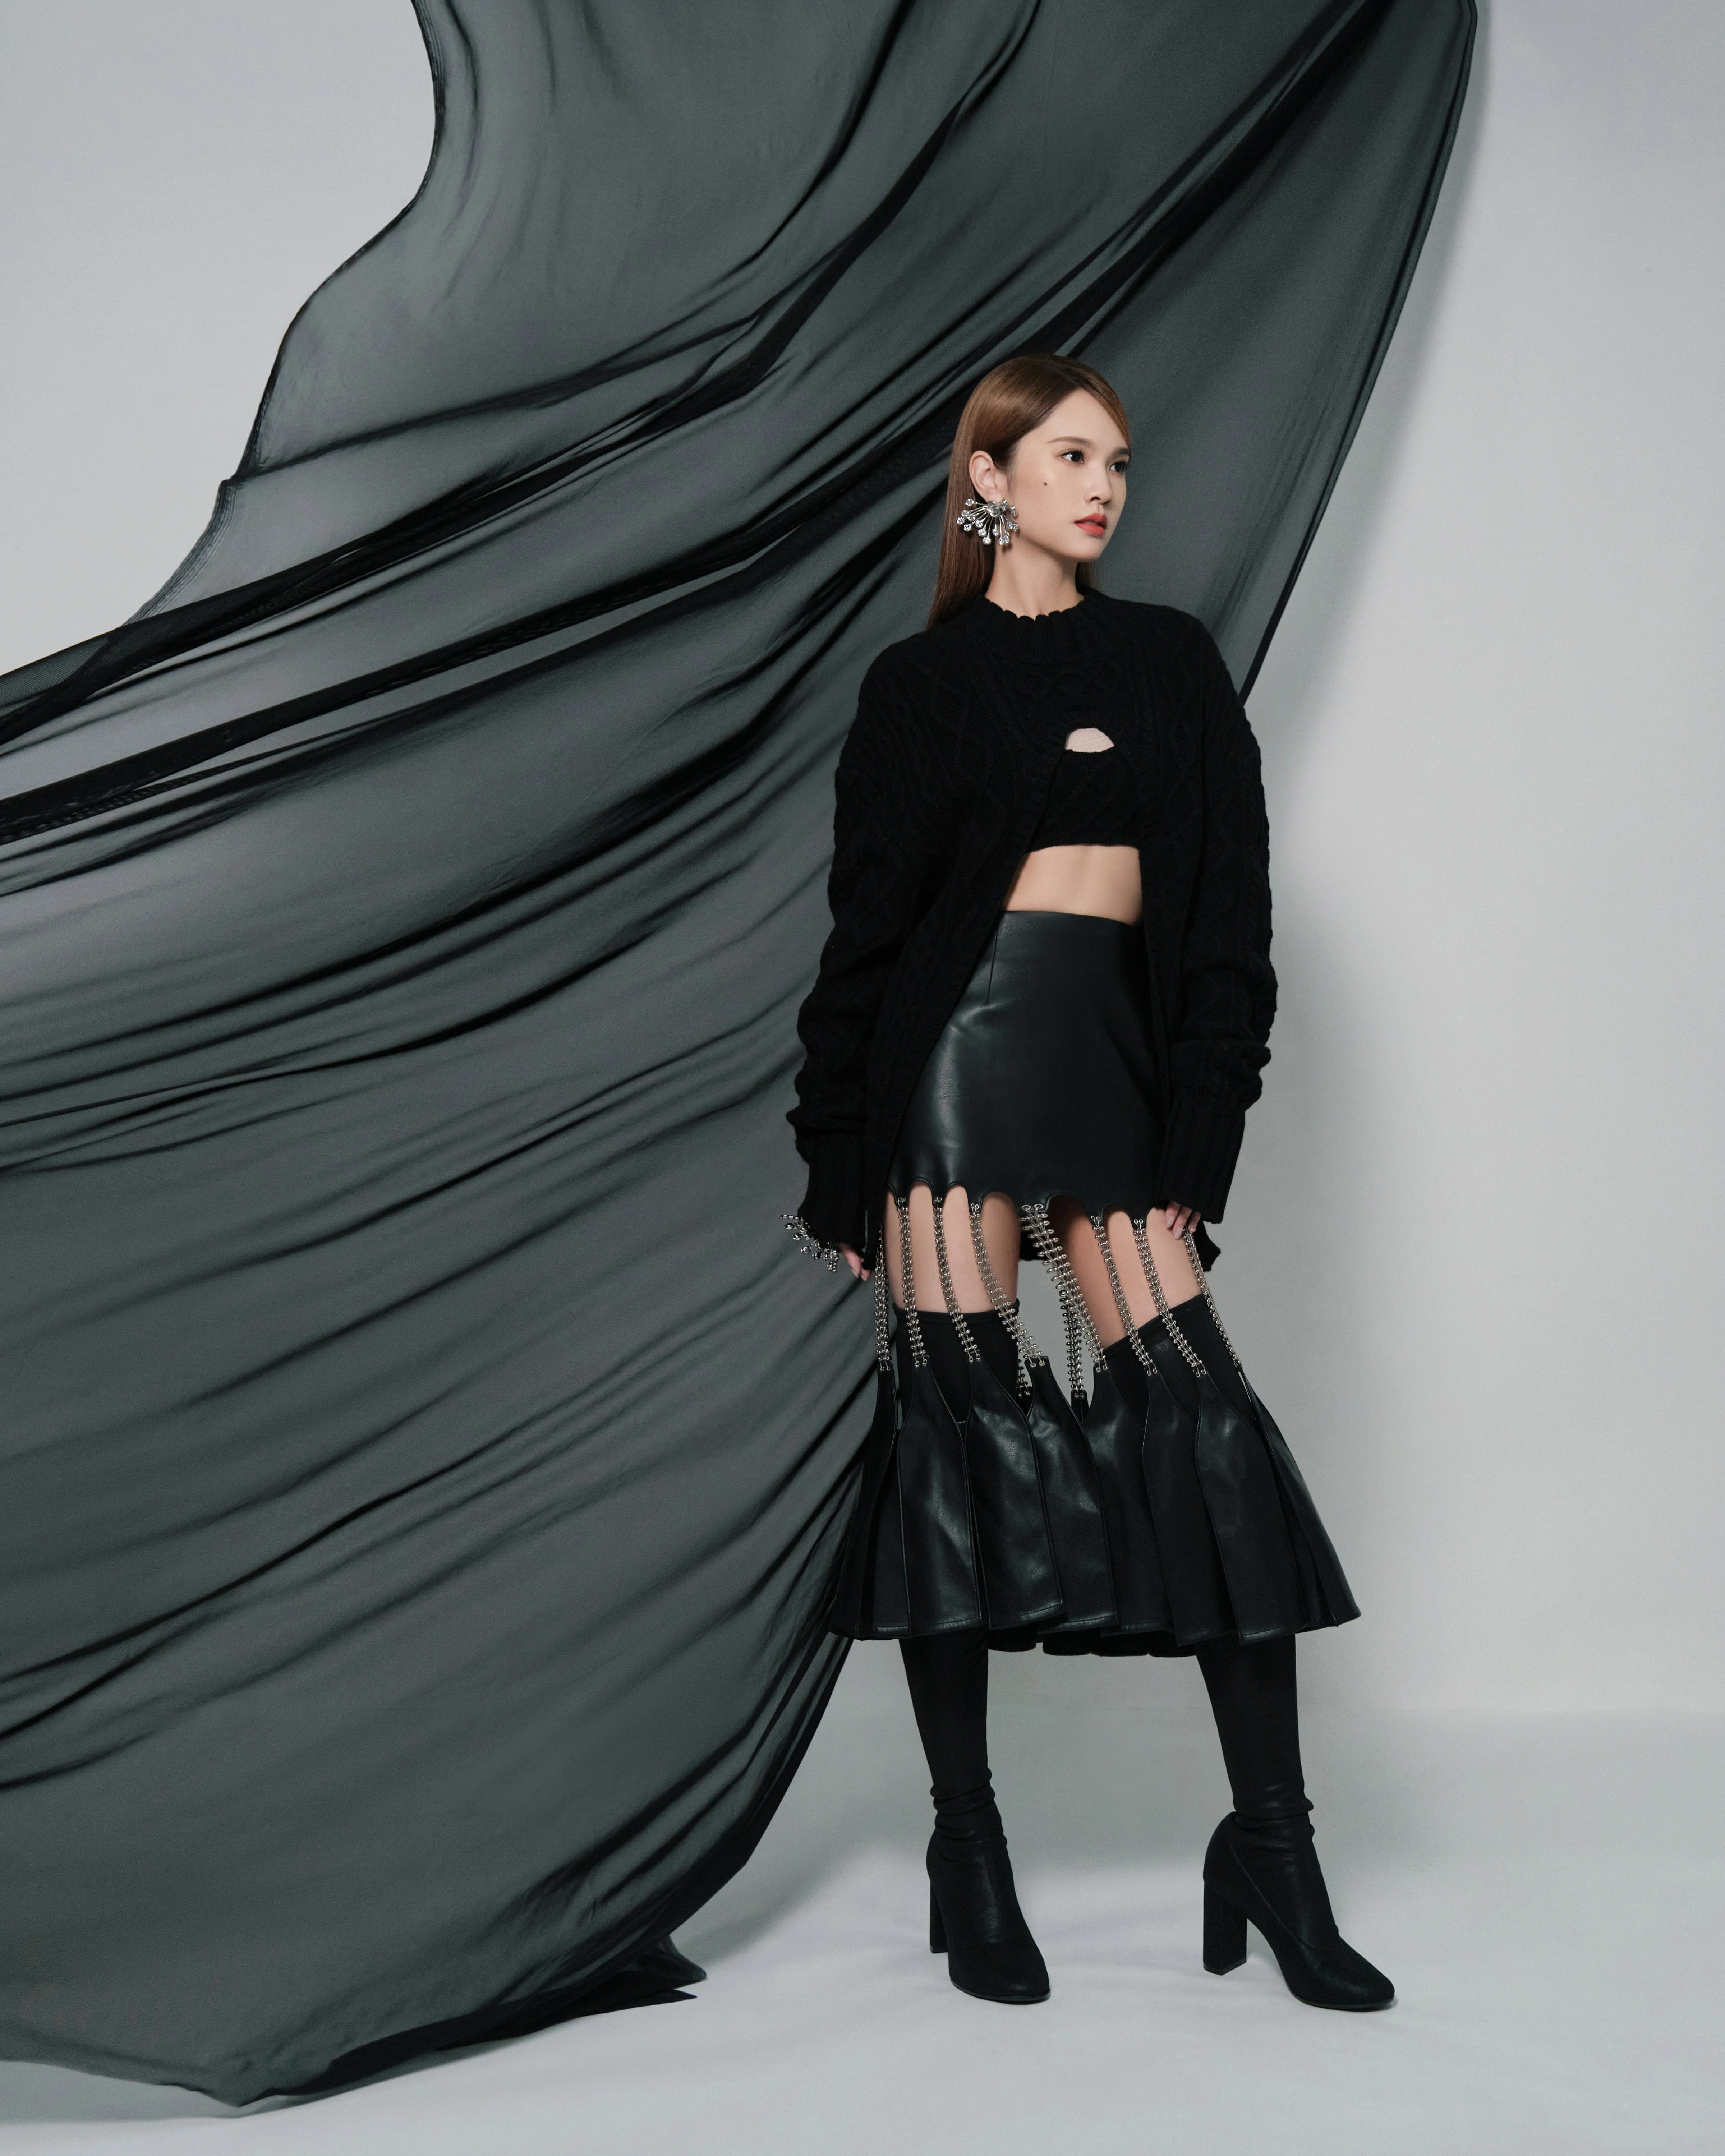 杨丞琳发布《我们的歌》舞台照 链条流苏皮裙造型秀小蛮腰,1